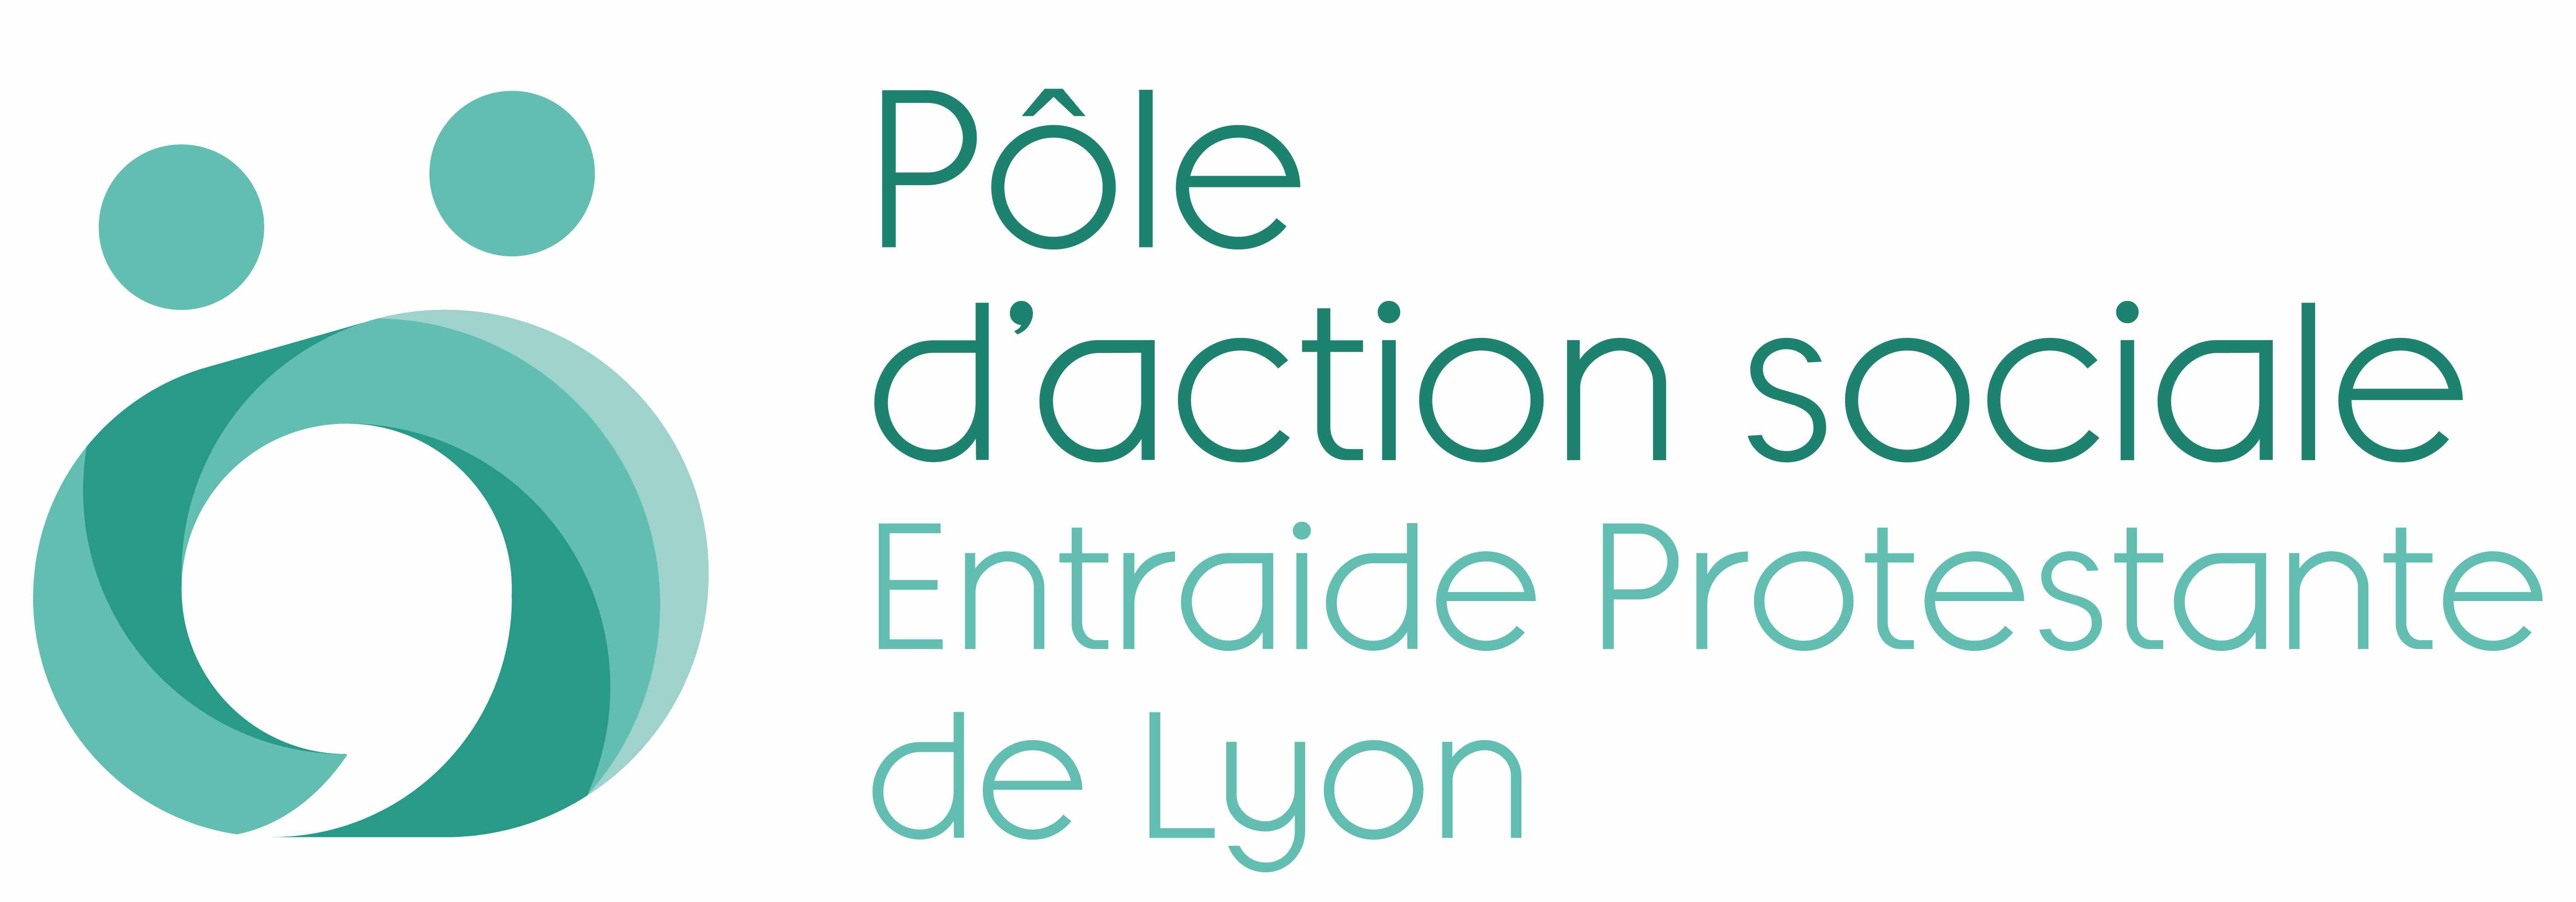 POLE D'ACTION SOCIALE-ENTRAIDE PROTESTANTE DE LYON